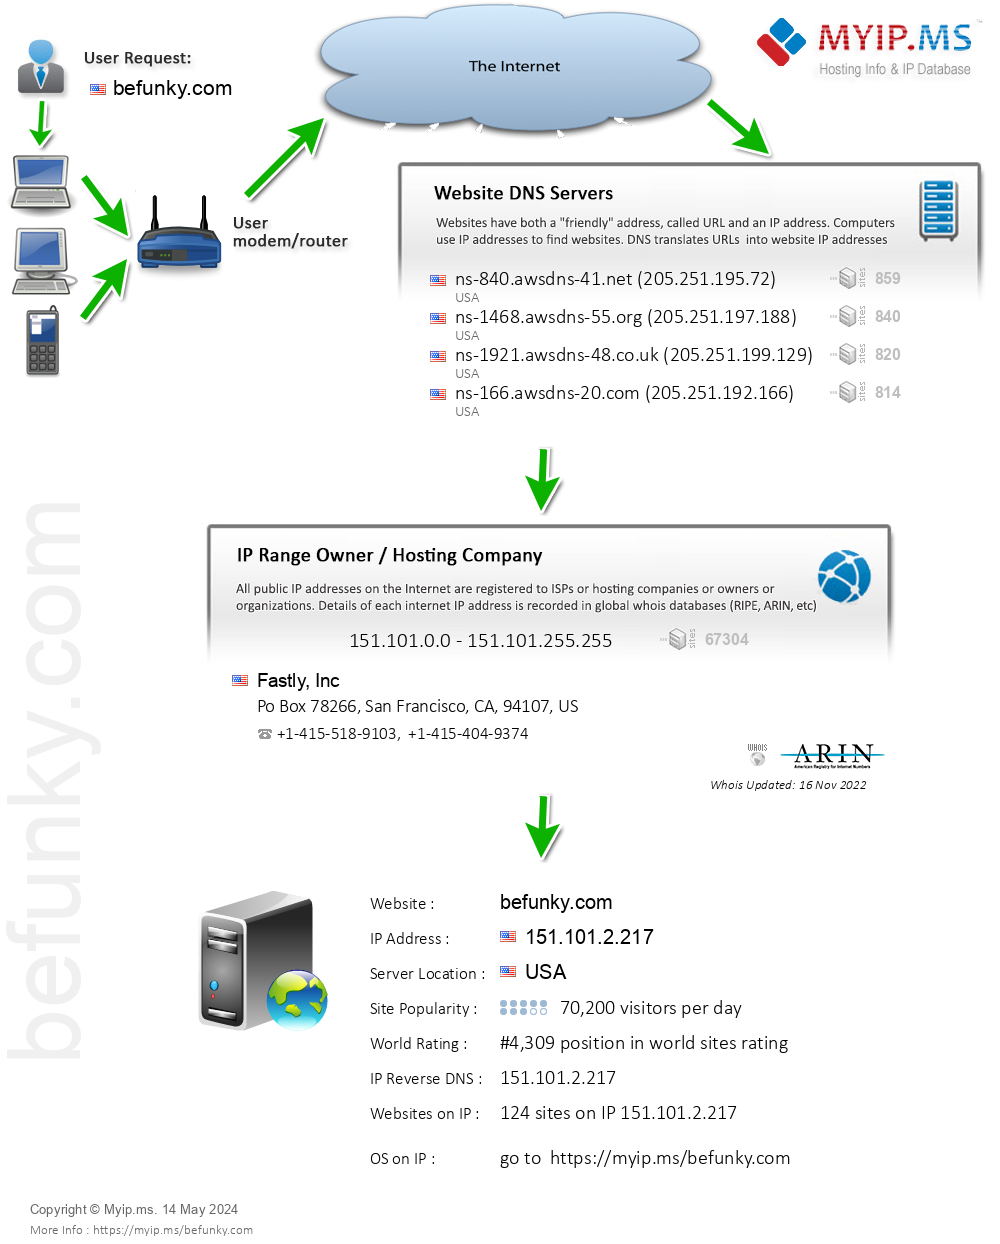 Befunky.com - Website Hosting Visual IP Diagram